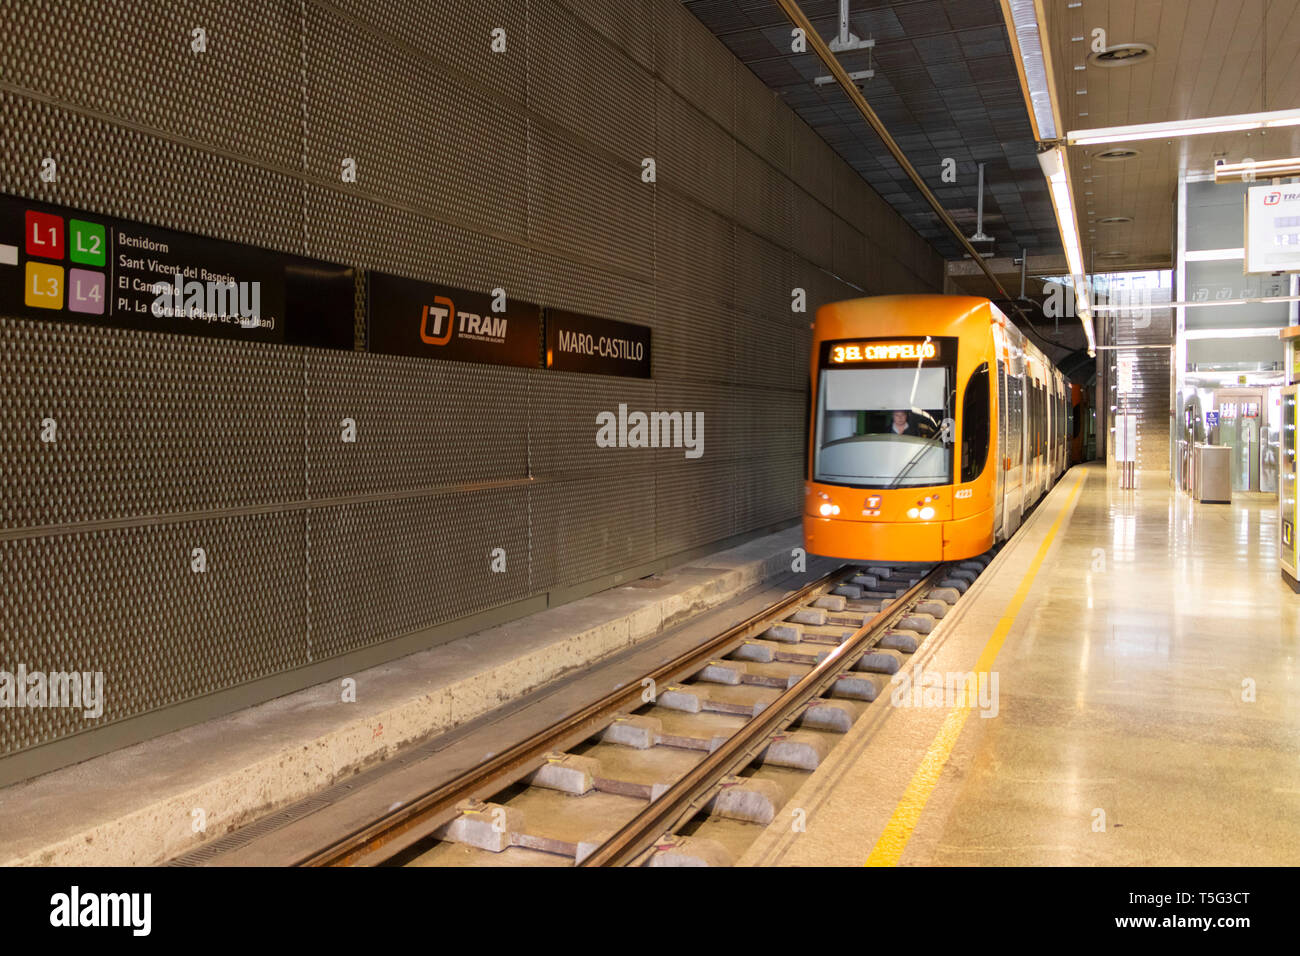 Orange El Campello gebunden u-bahn Geschwindigkeiten in Marq - Castillo Rapid Transit Bahnhof in Alicante Spanien Stockfoto